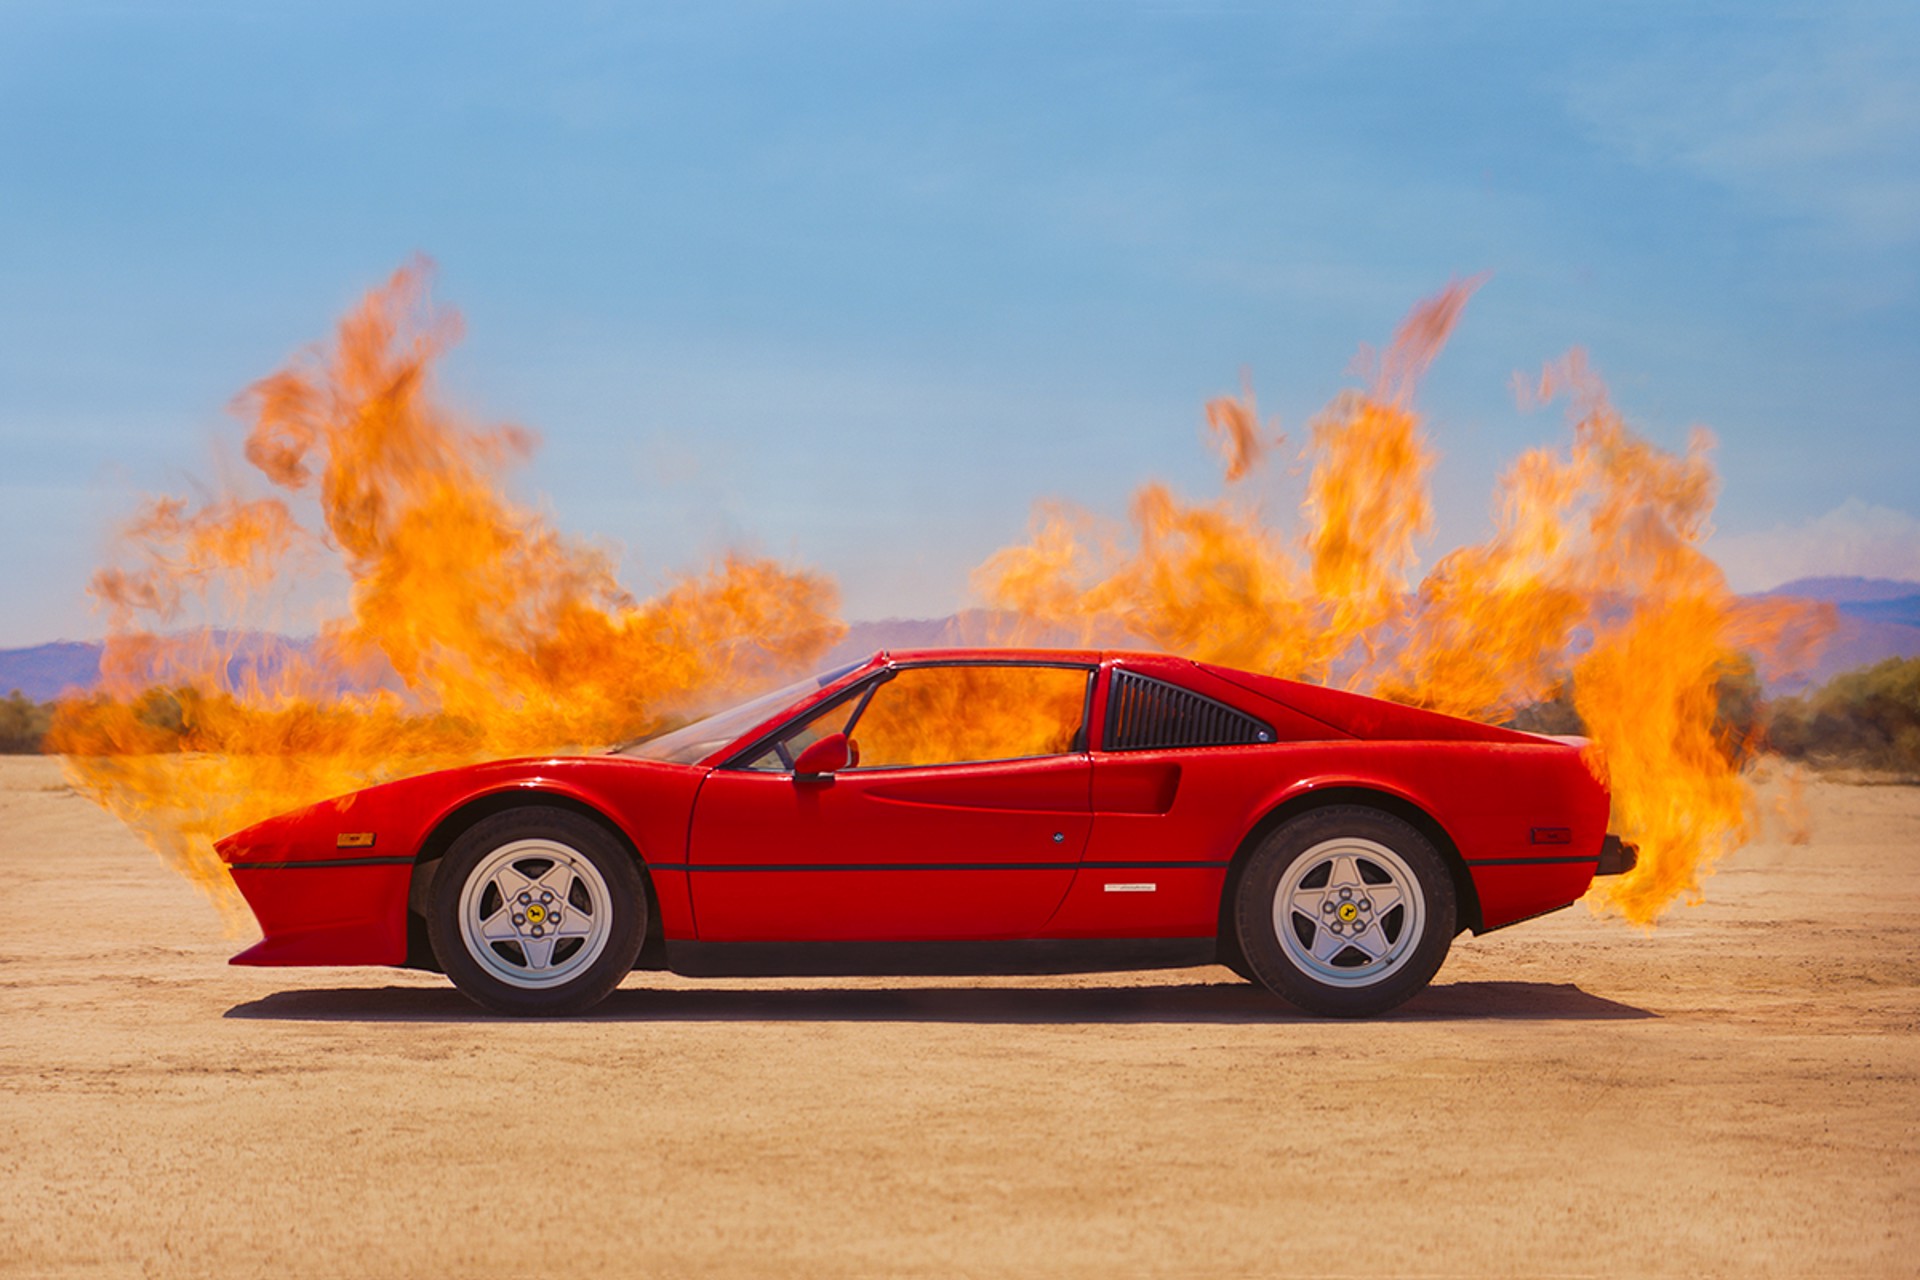 Ferrari on Fire by Tyler Shields